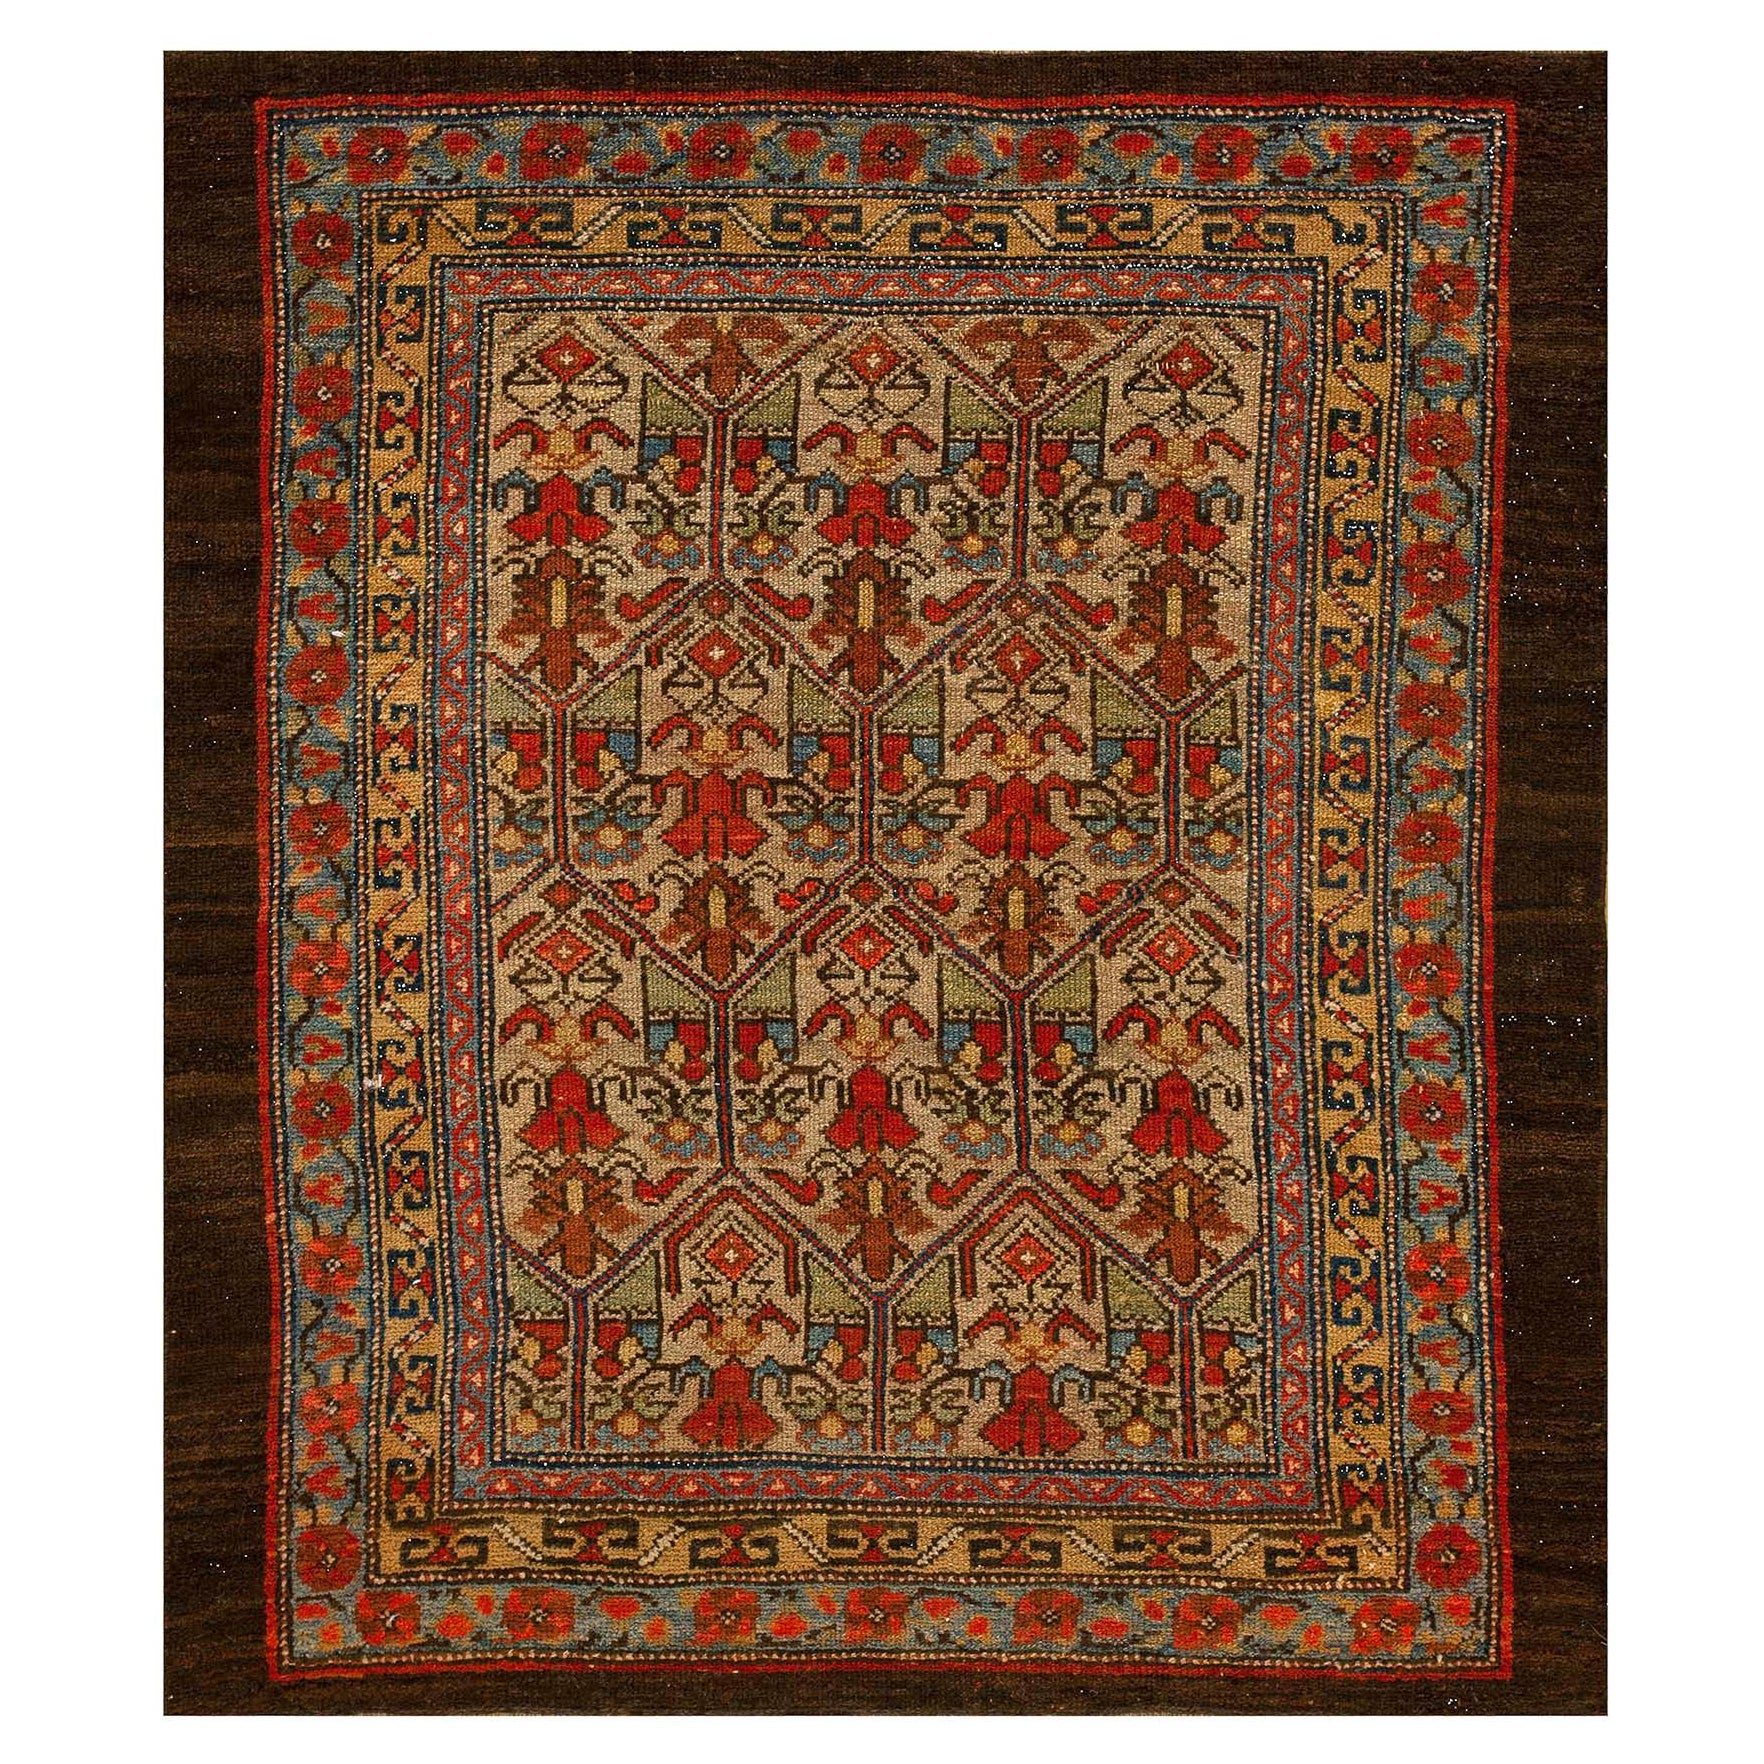 Persischer Serab-Teppich aus dem 19. Jahrhundert ( 3'2'' x 3'9'' - 97 x 114 )